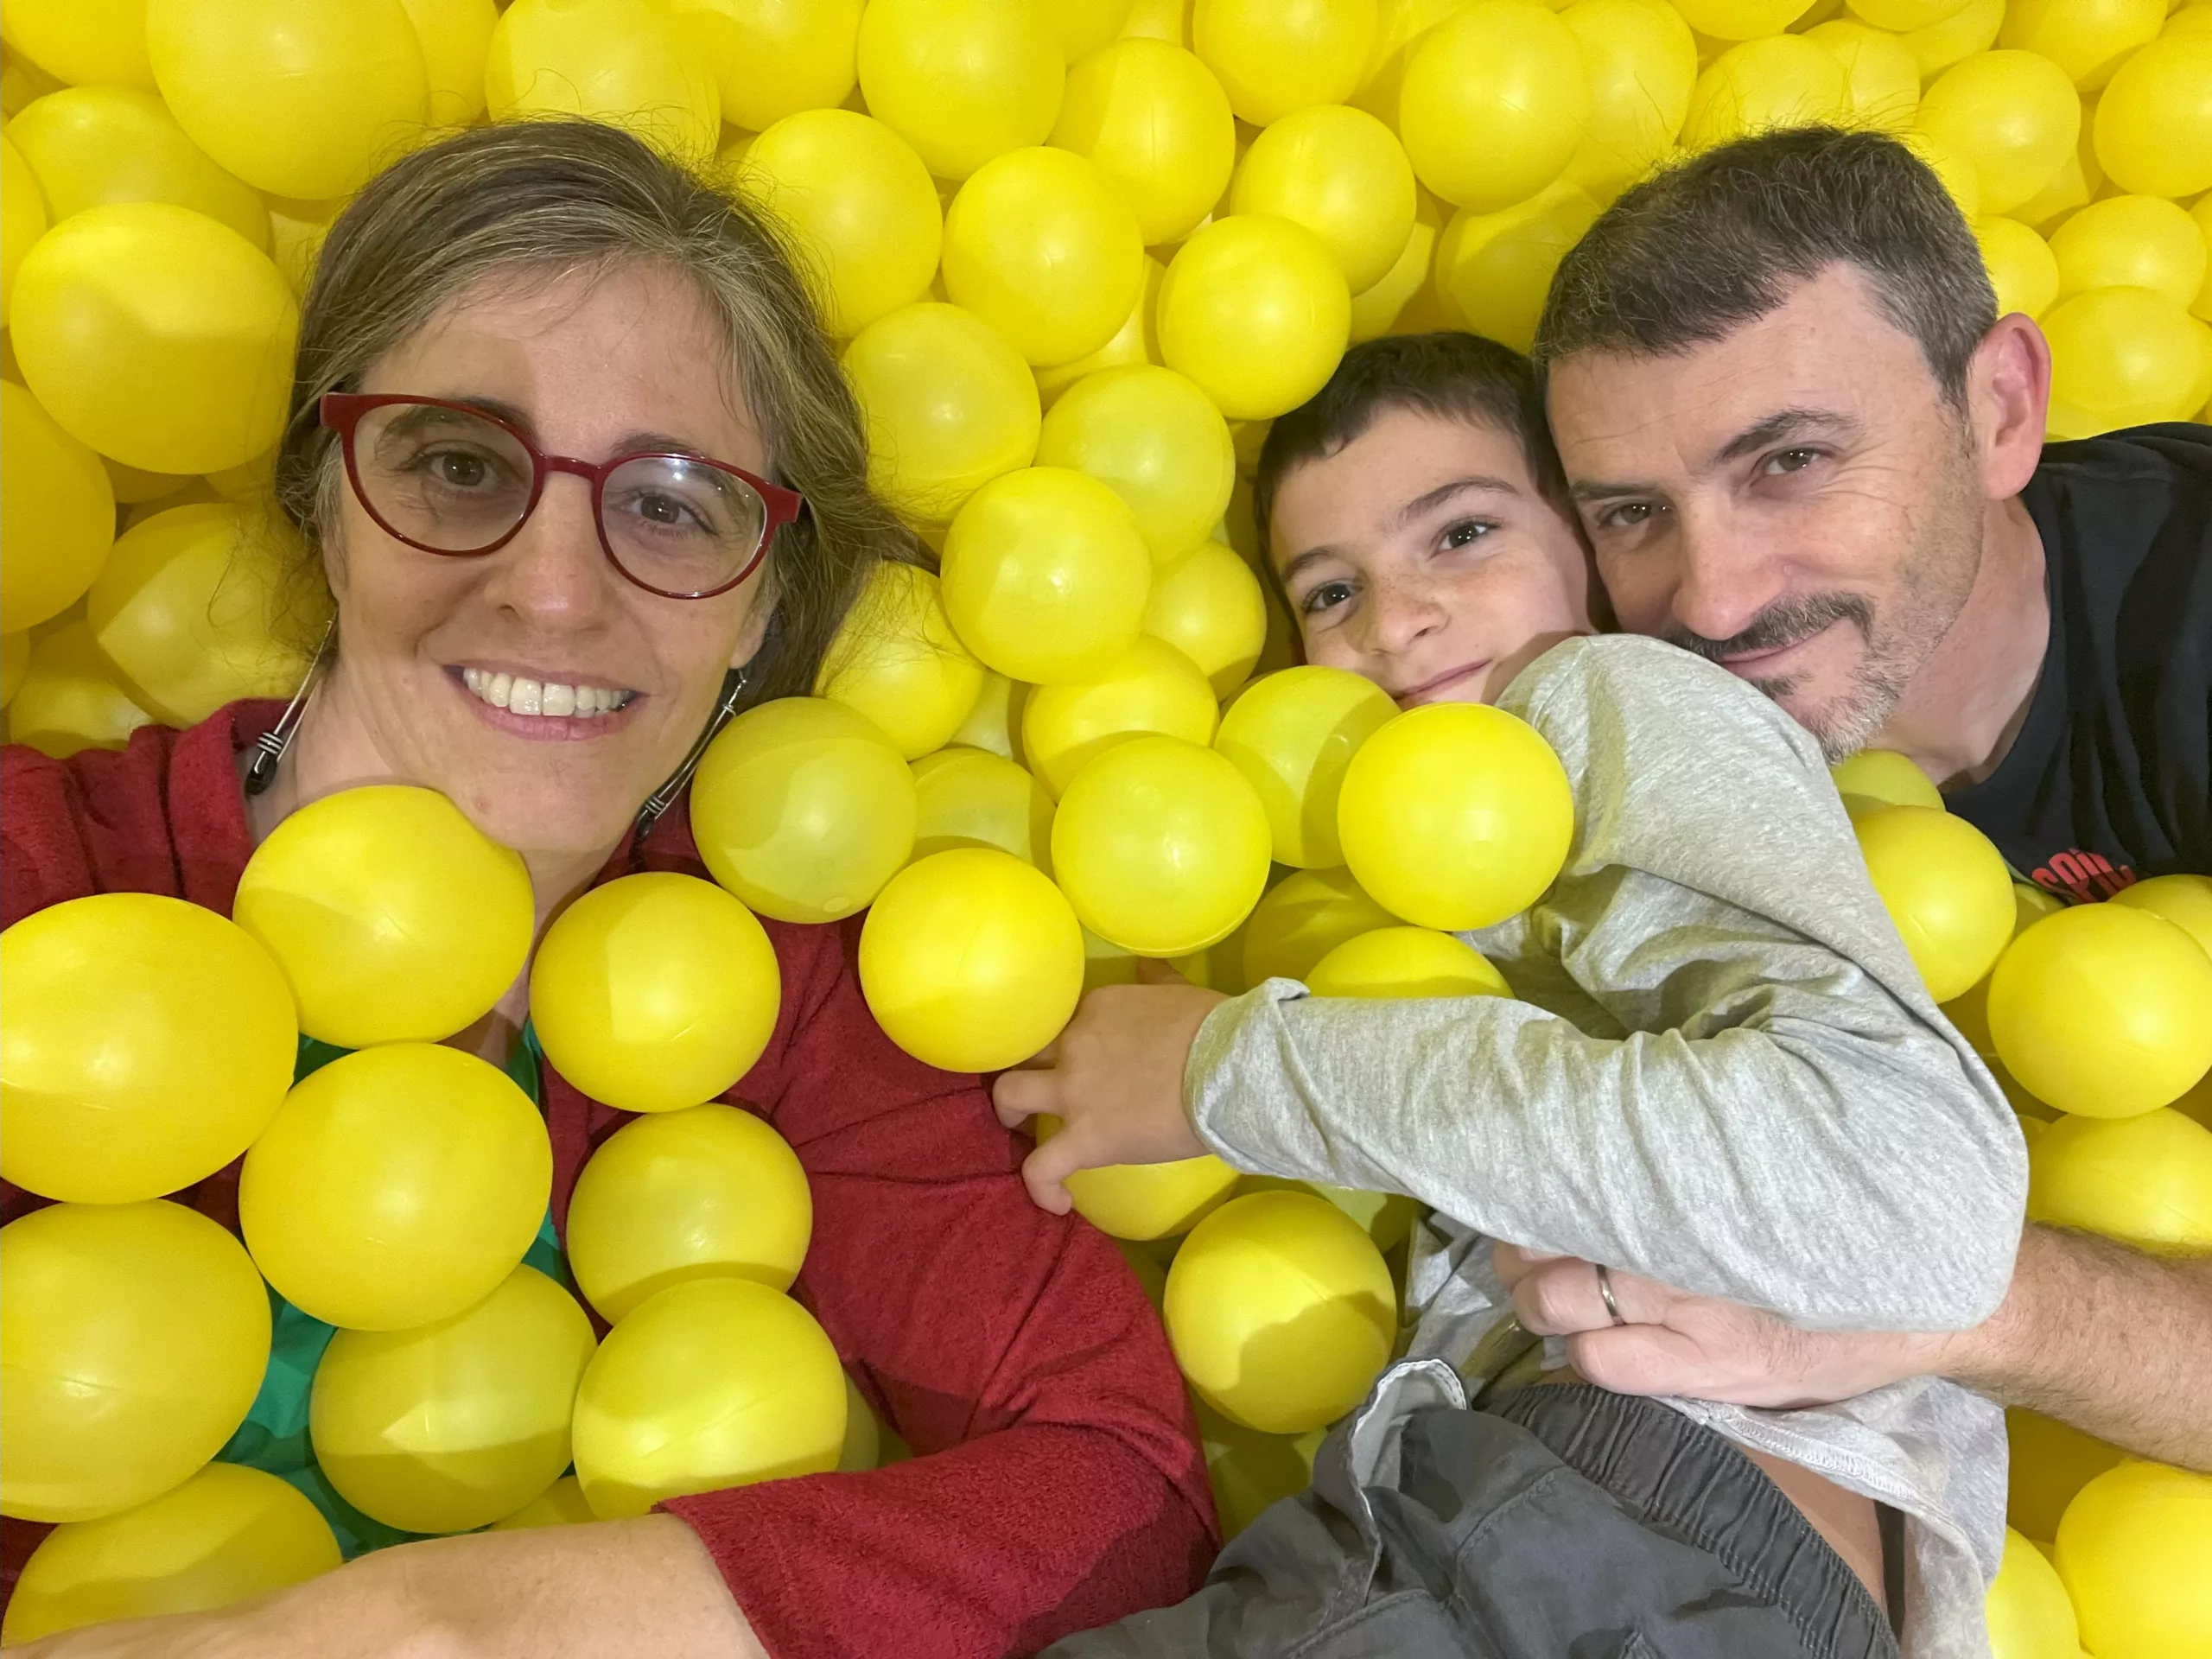 Cliché Selfie Gallery Málaga: galería interactiva para divertirse familia